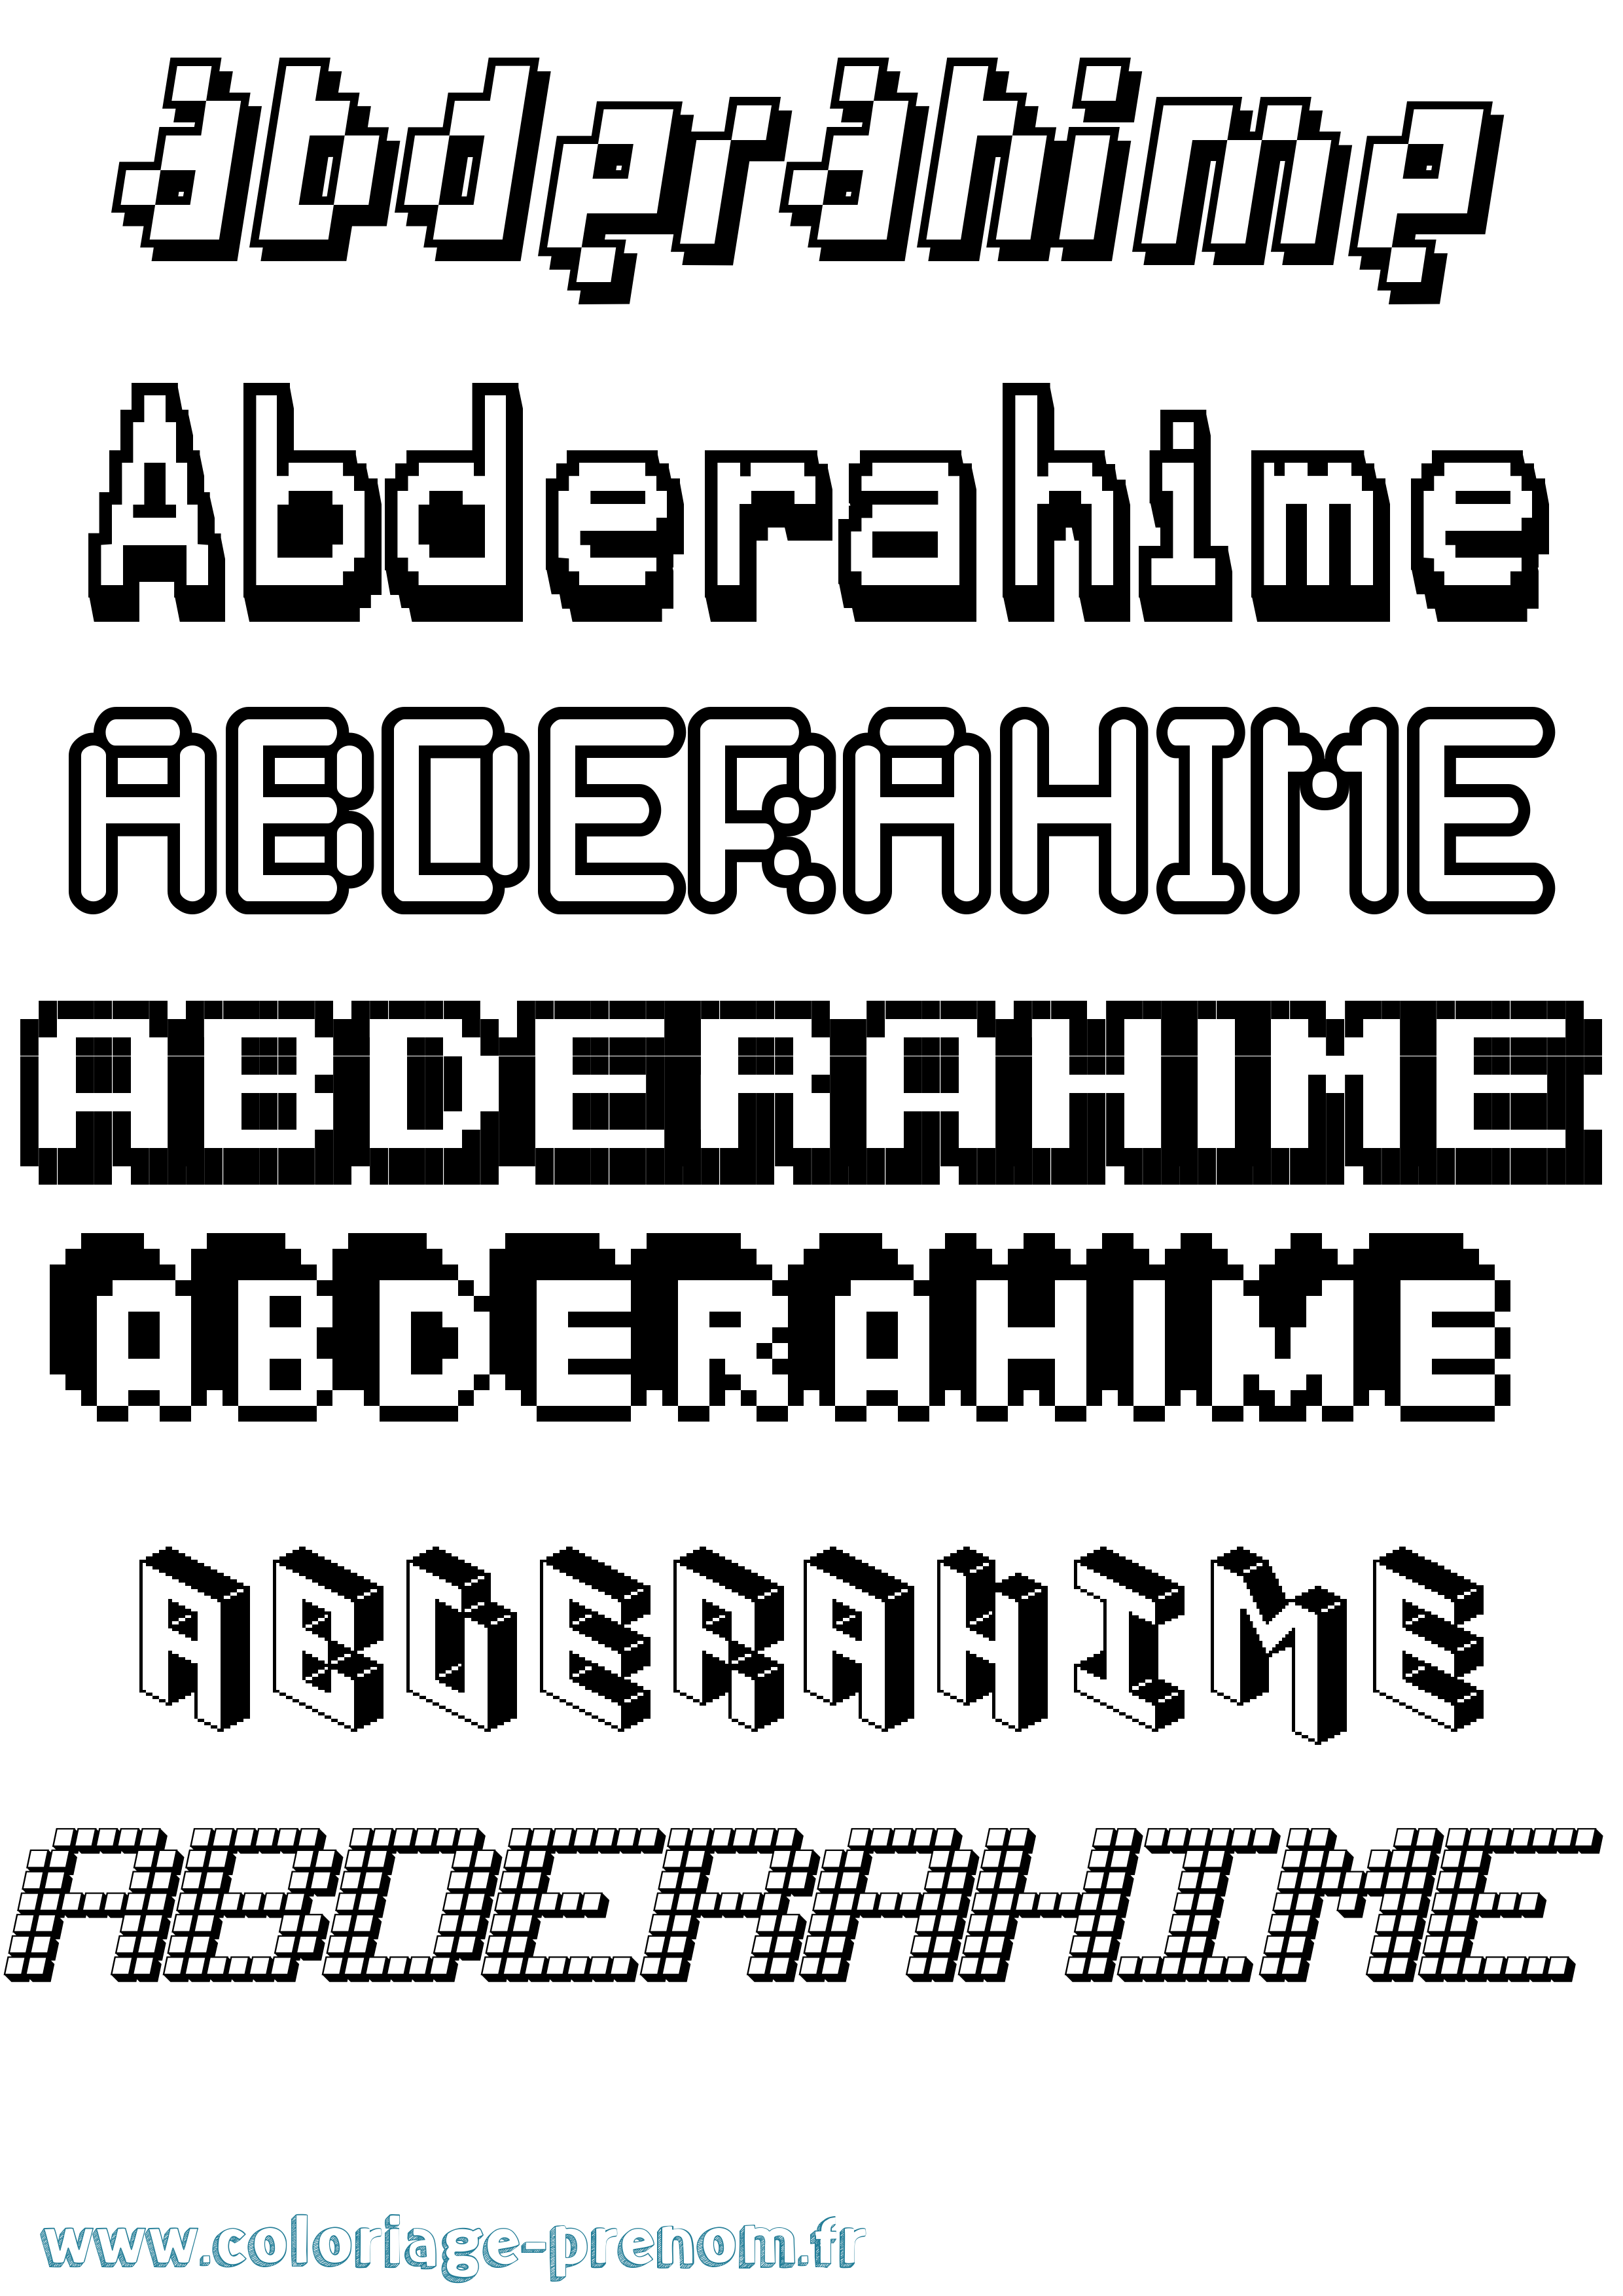 Coloriage prénom Abderahime Pixel